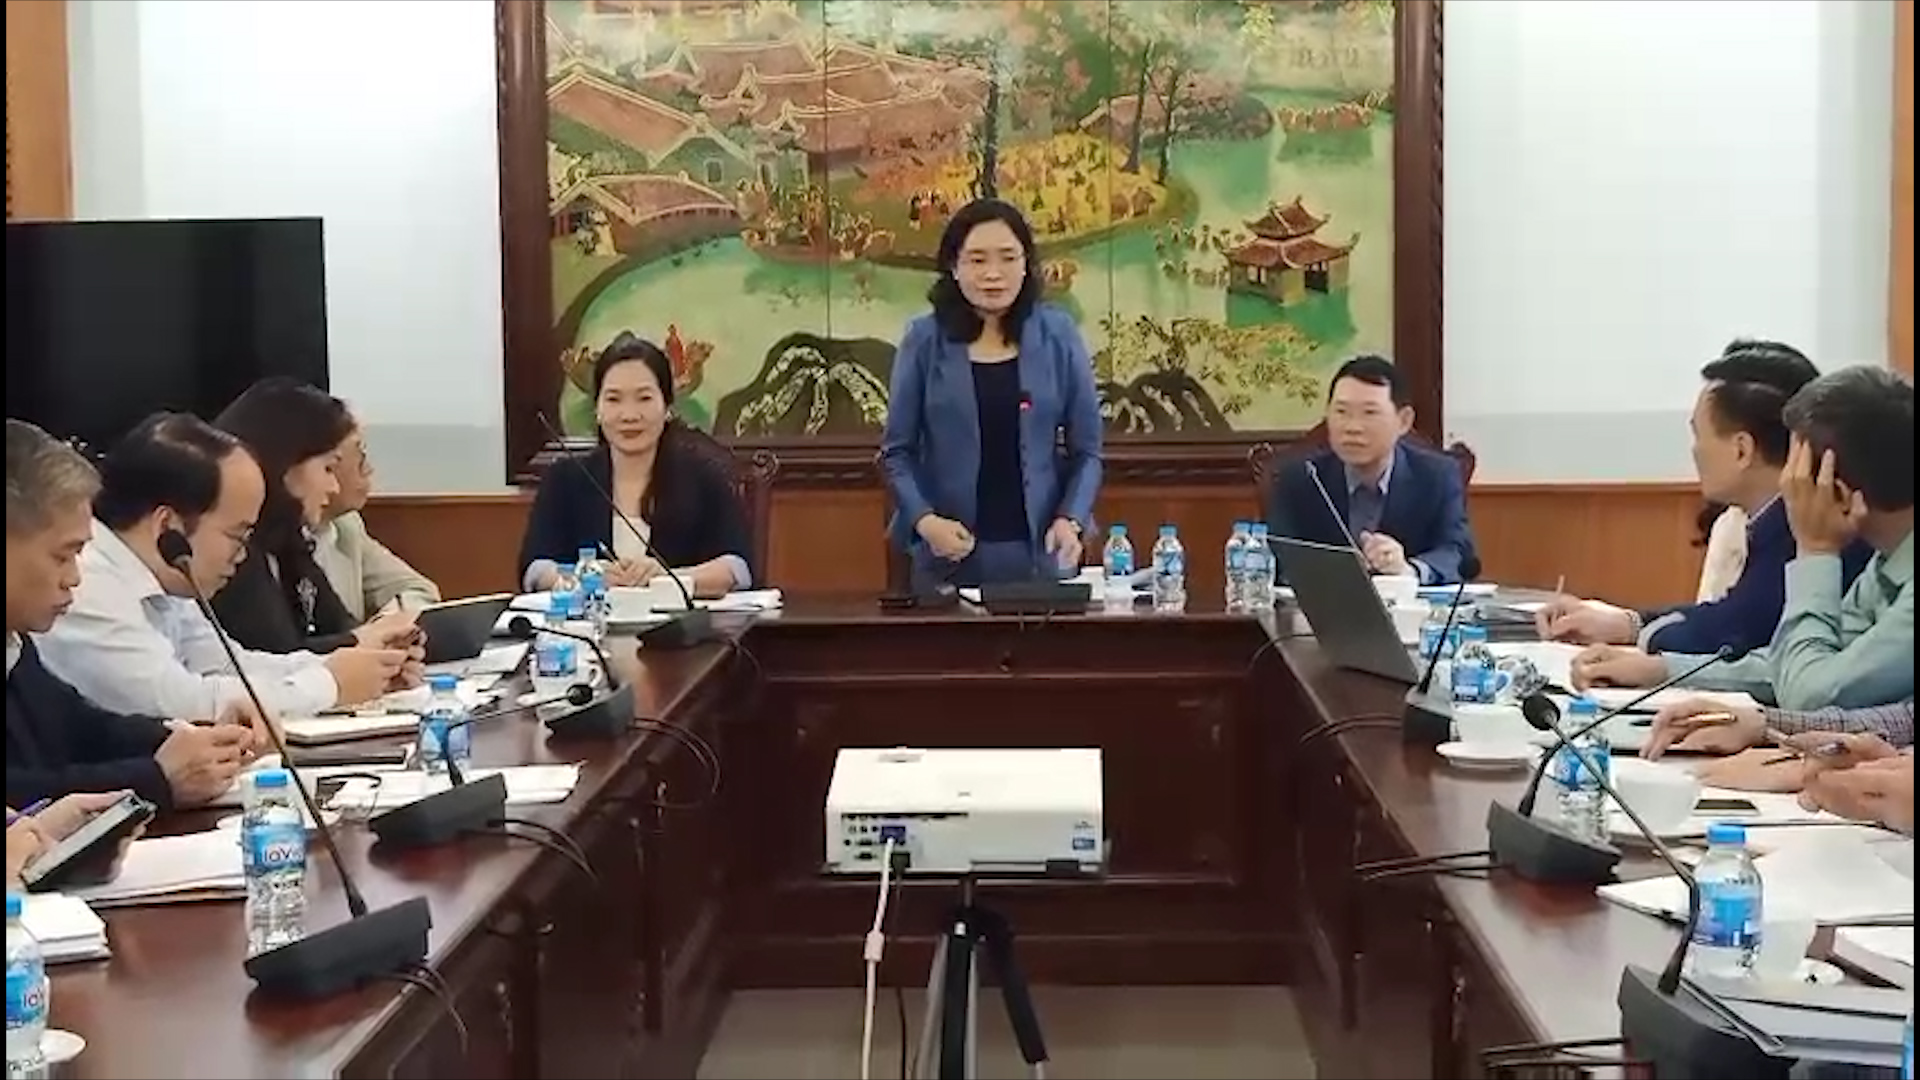 Tiến sỹ Trịnh Thị Thủy, Thứ trưởng Bộ Văn hóa, Thể thao và Du lịch chỉ đạo tại cuộc họp.